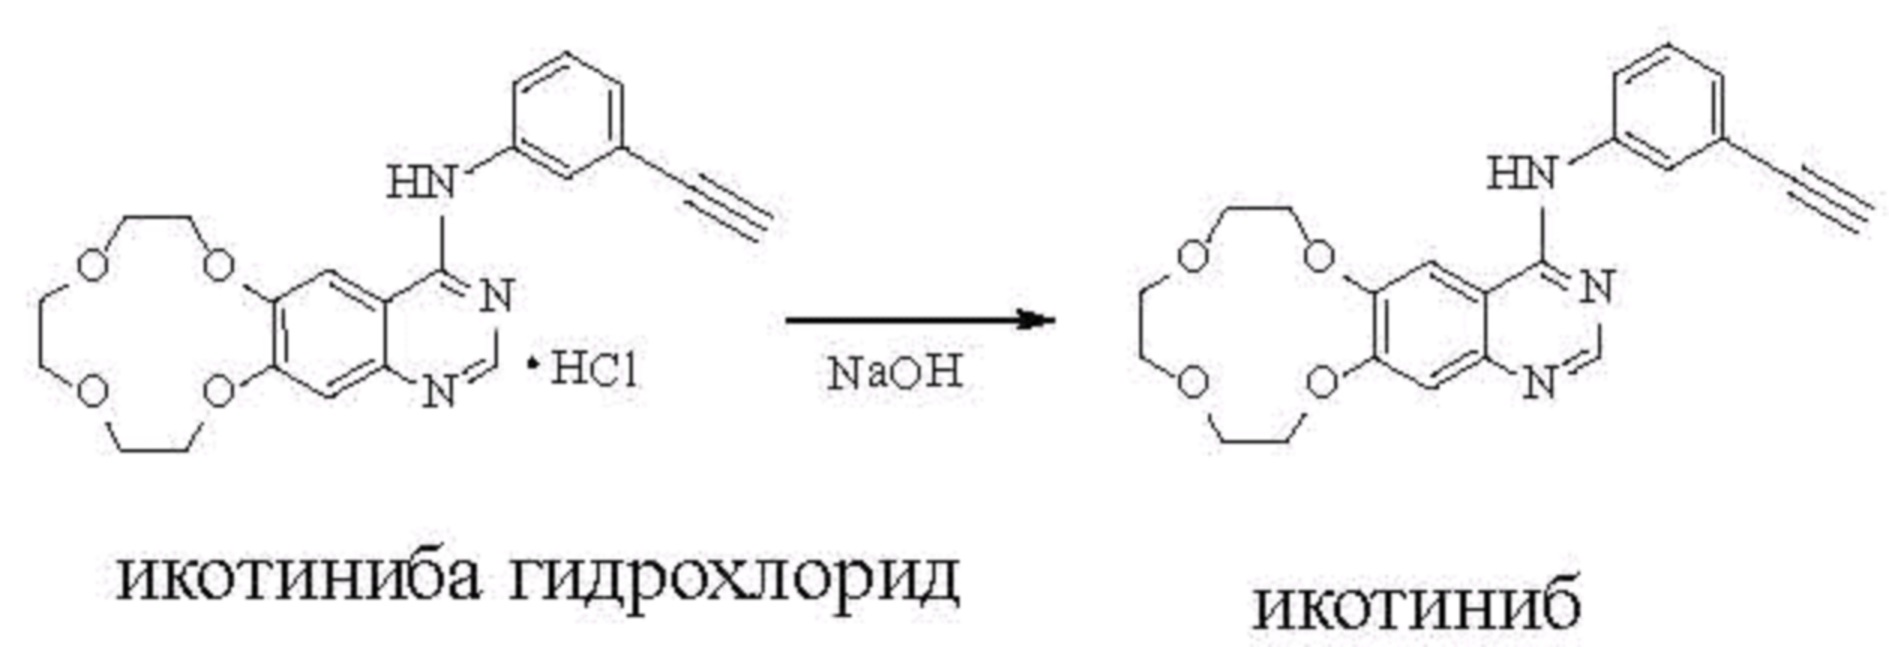 1 адреналина гидрохлорид. Малеиновый ангидрид формула. Малеат натрия. Малеиновая кислота и гидроксид натрия. Адреналина гидрохлорид.